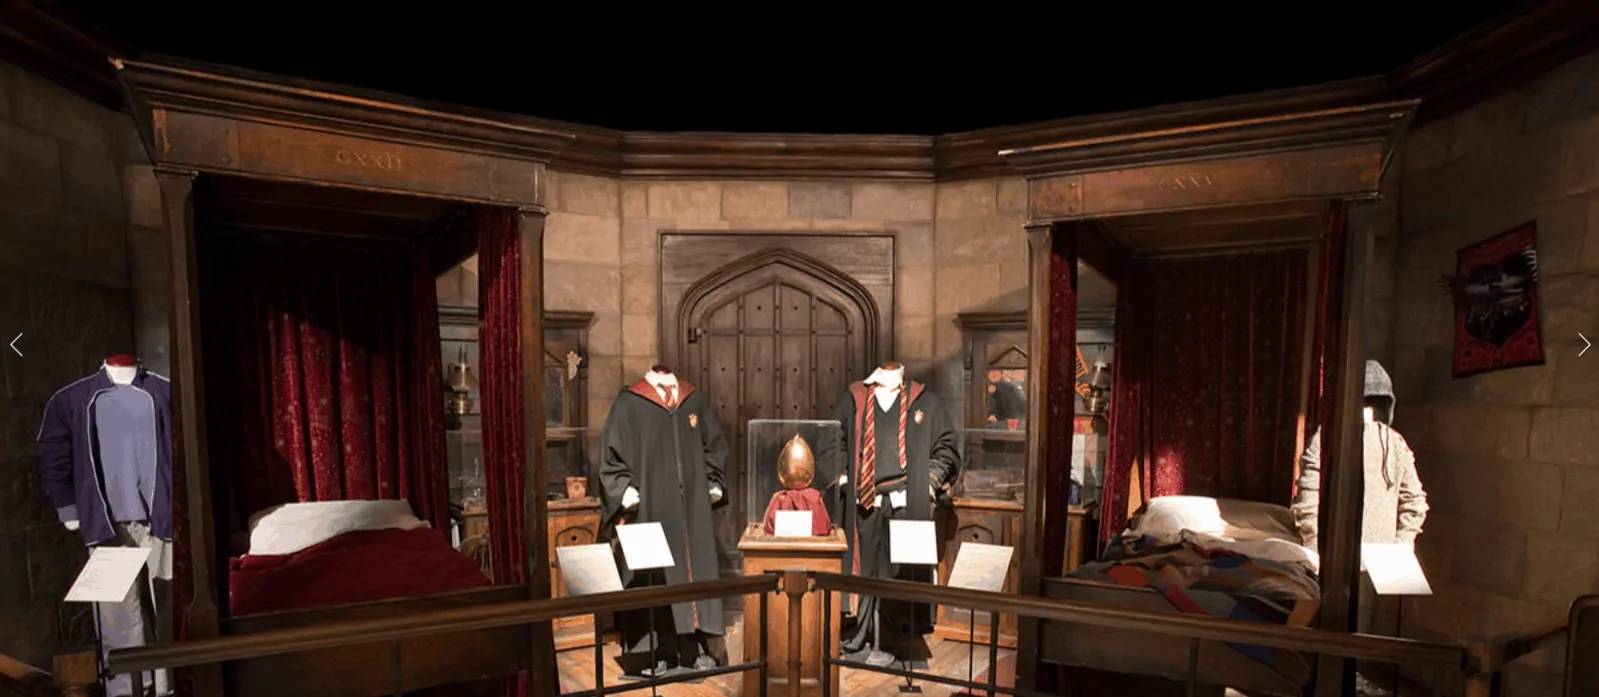 Figurinos e artefatos usados nas filmagens de Harry Potter estão expostos em Portugal